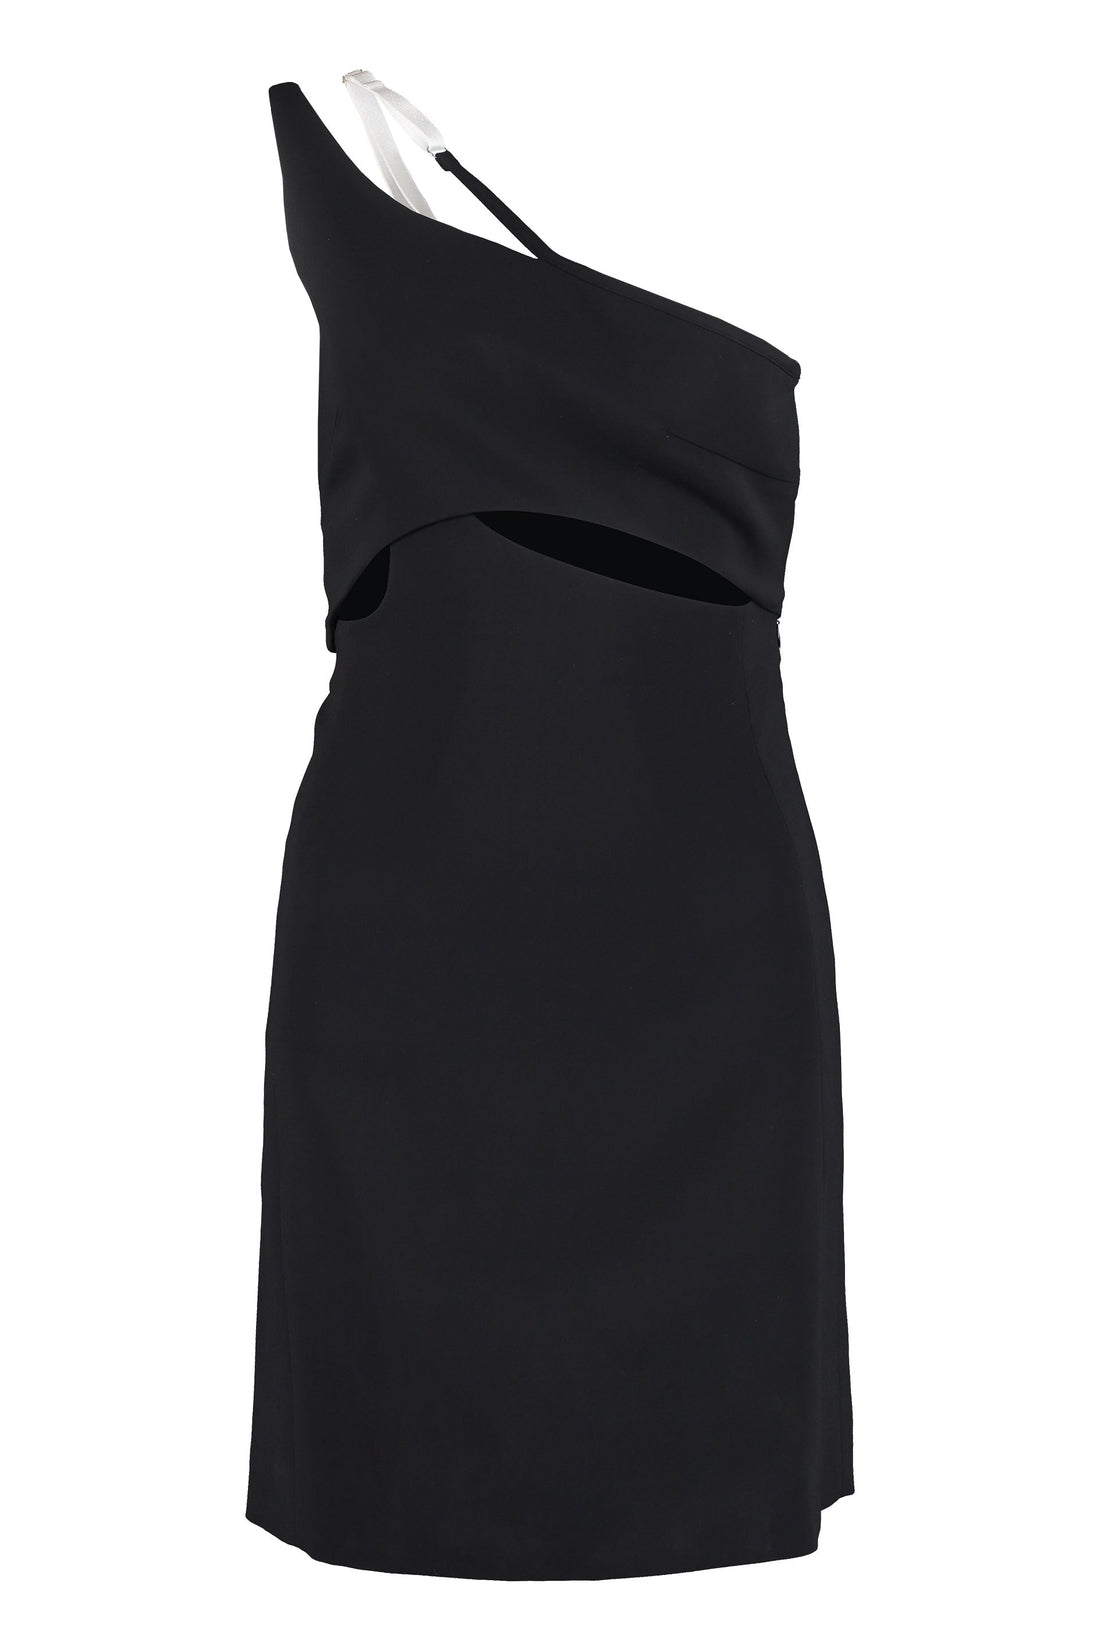 Givenchy-OUTLET-SALE-Asymmetric mini dress-ARCHIVIST